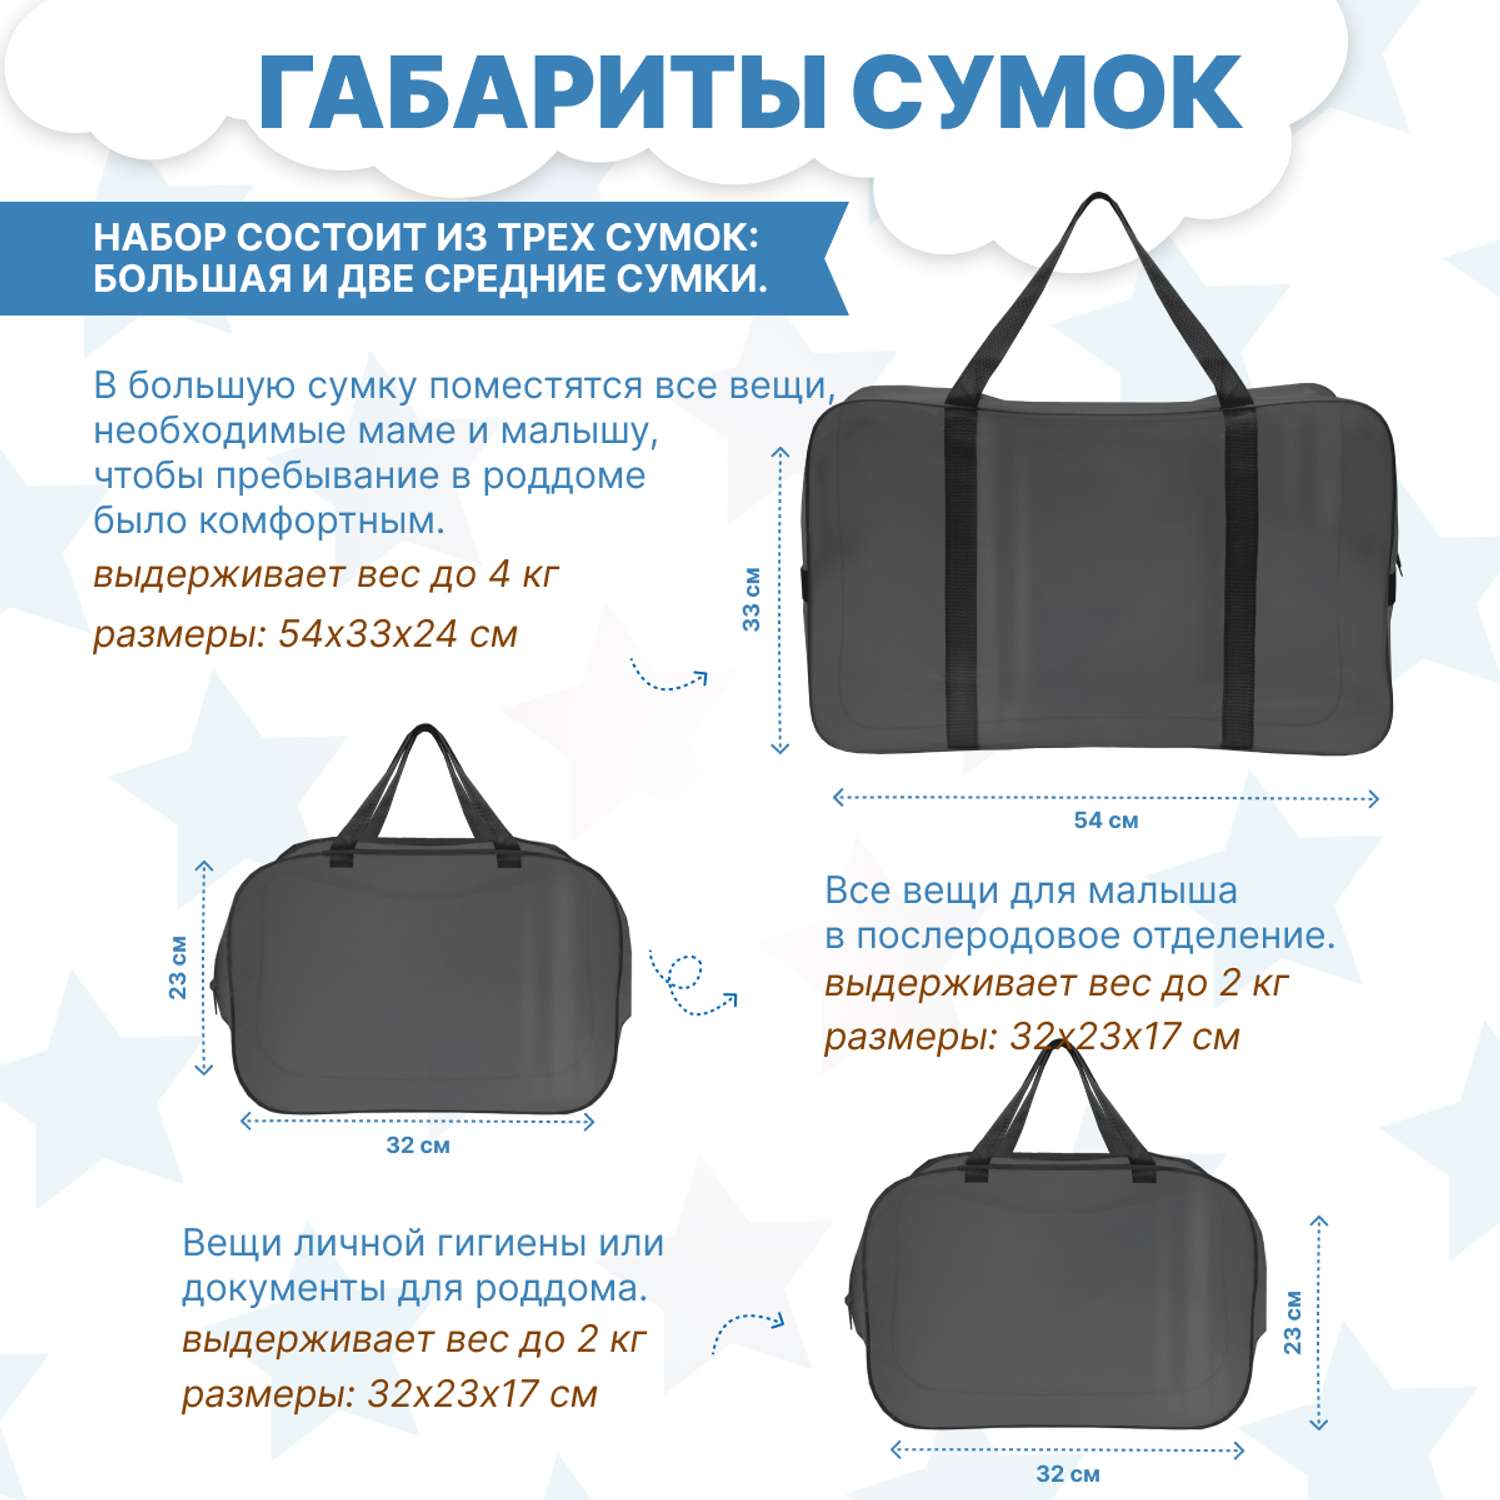 Набор для роддома ForBaby прозрачные сумки 3 шт - черный цвет - фото 3